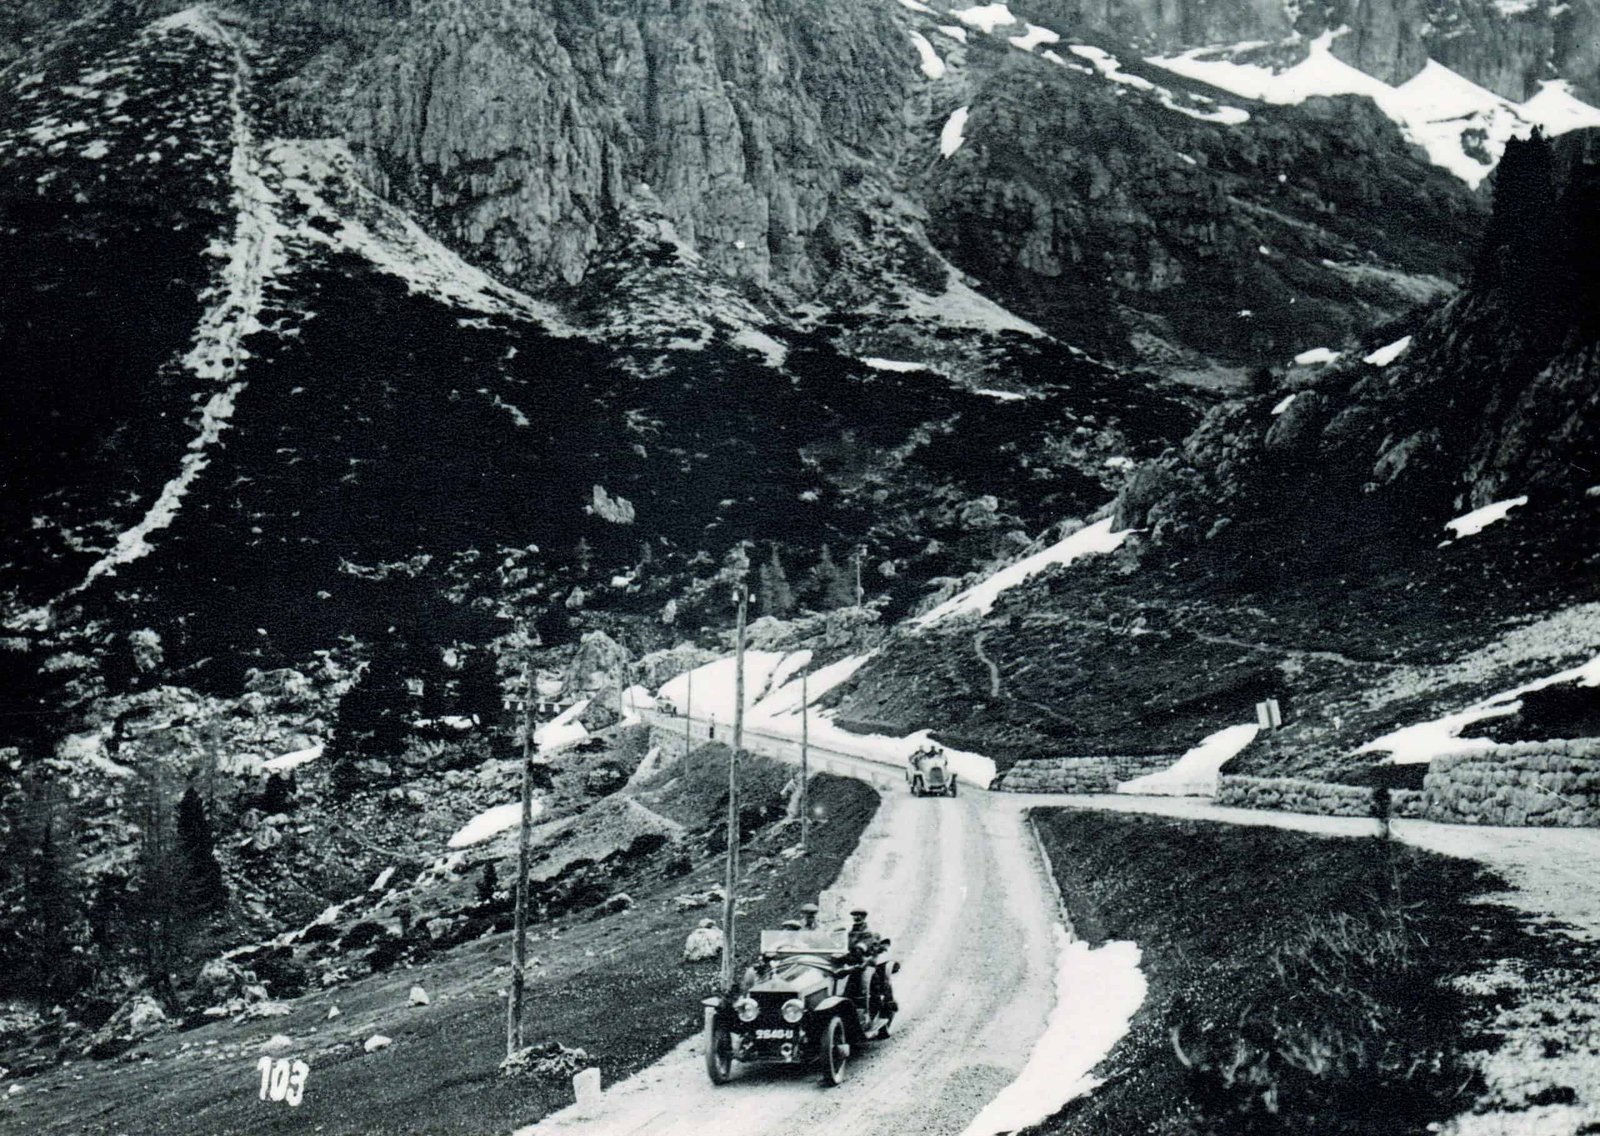 A man driving a car down a mountain road as part of an adventurous trial.